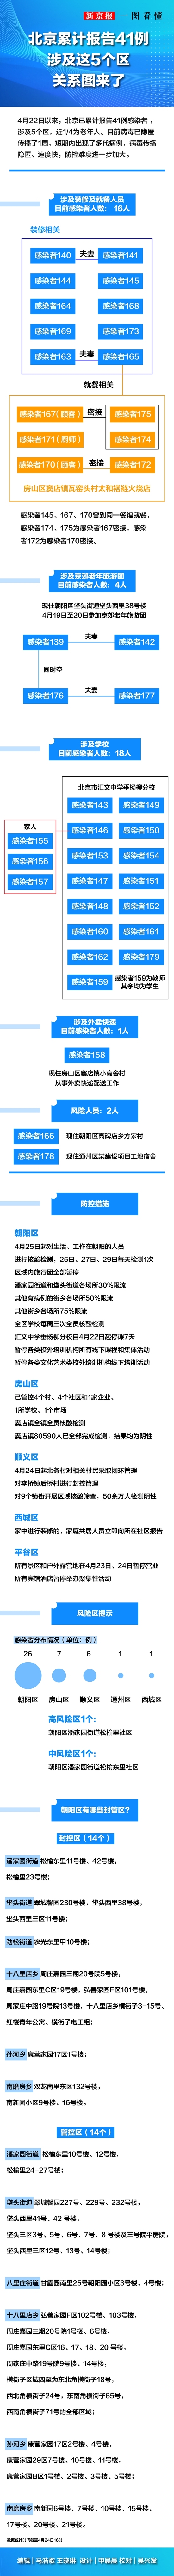 北京新增3地中风险 现有5地高风险19地中风险 - PHL63t - PeraPlay.Net 百度热点快讯